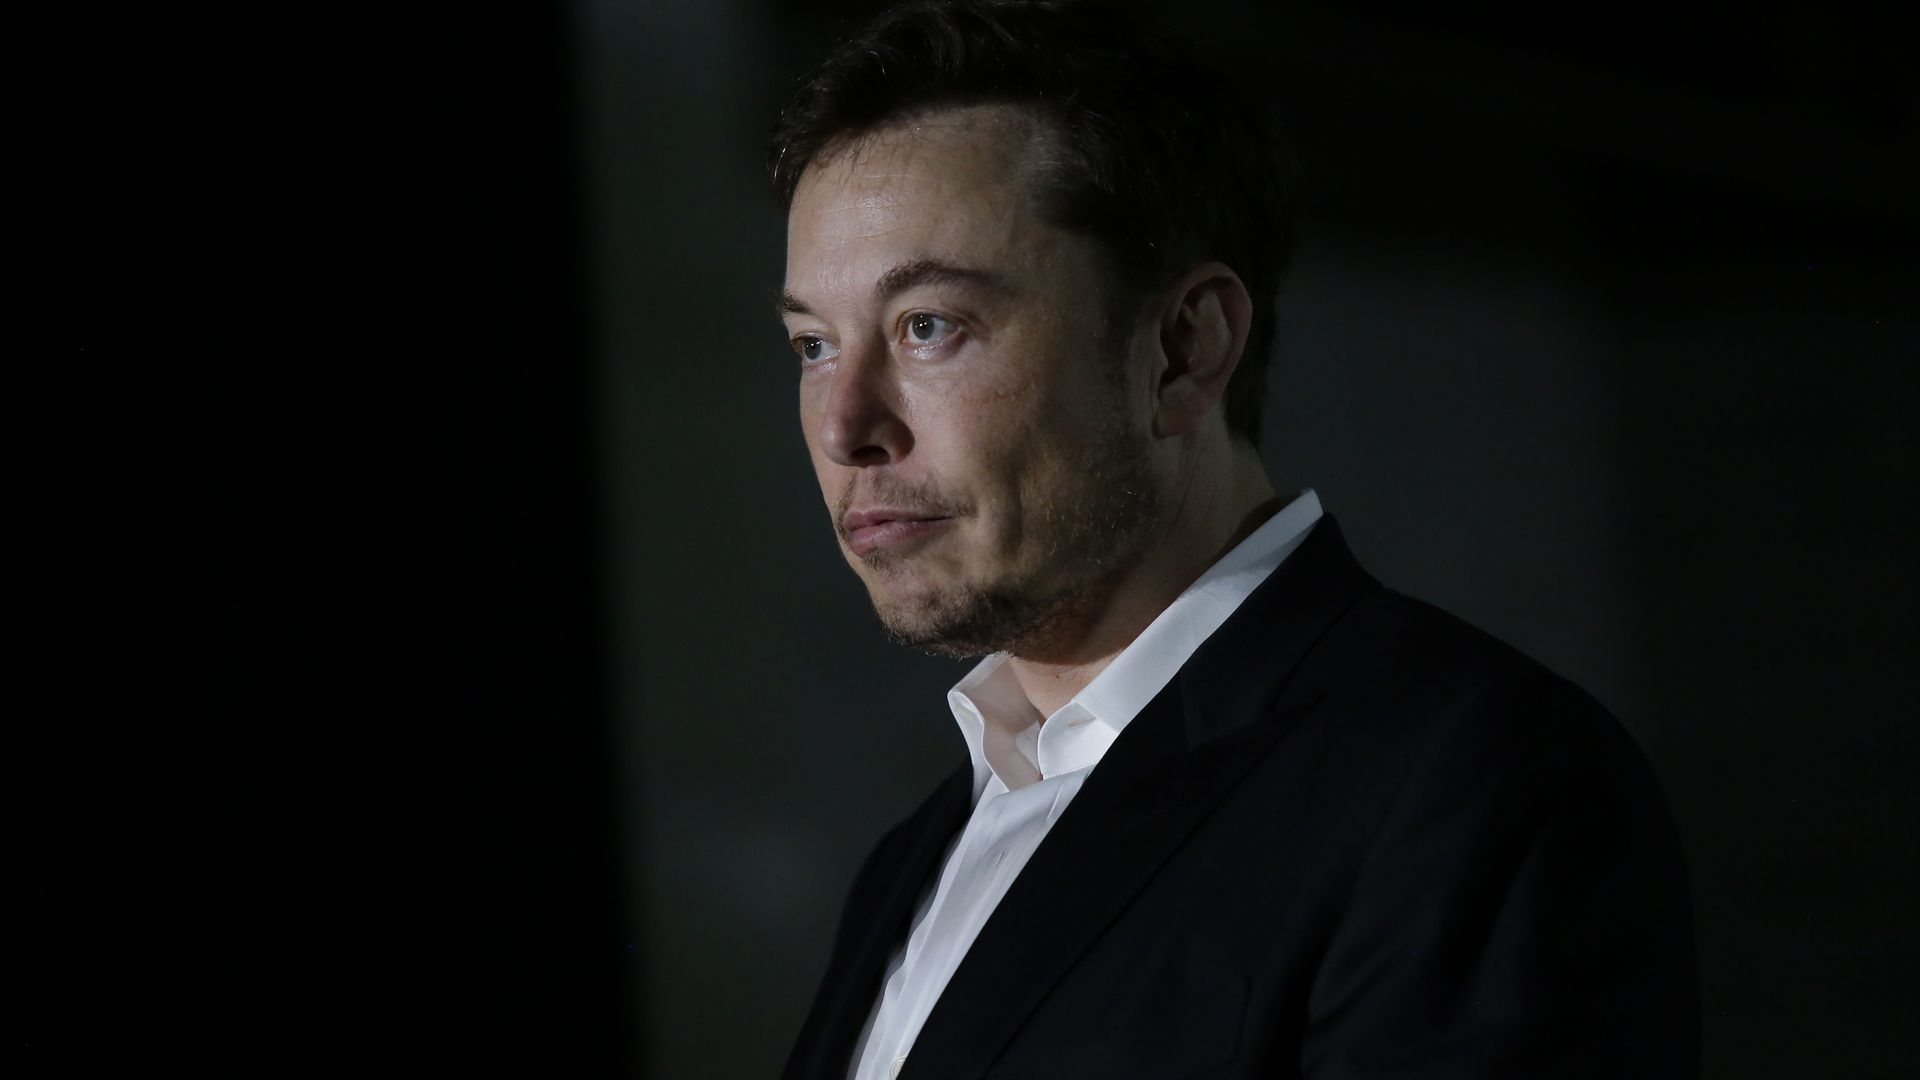 Tesla founder Elon Musk in a portrait